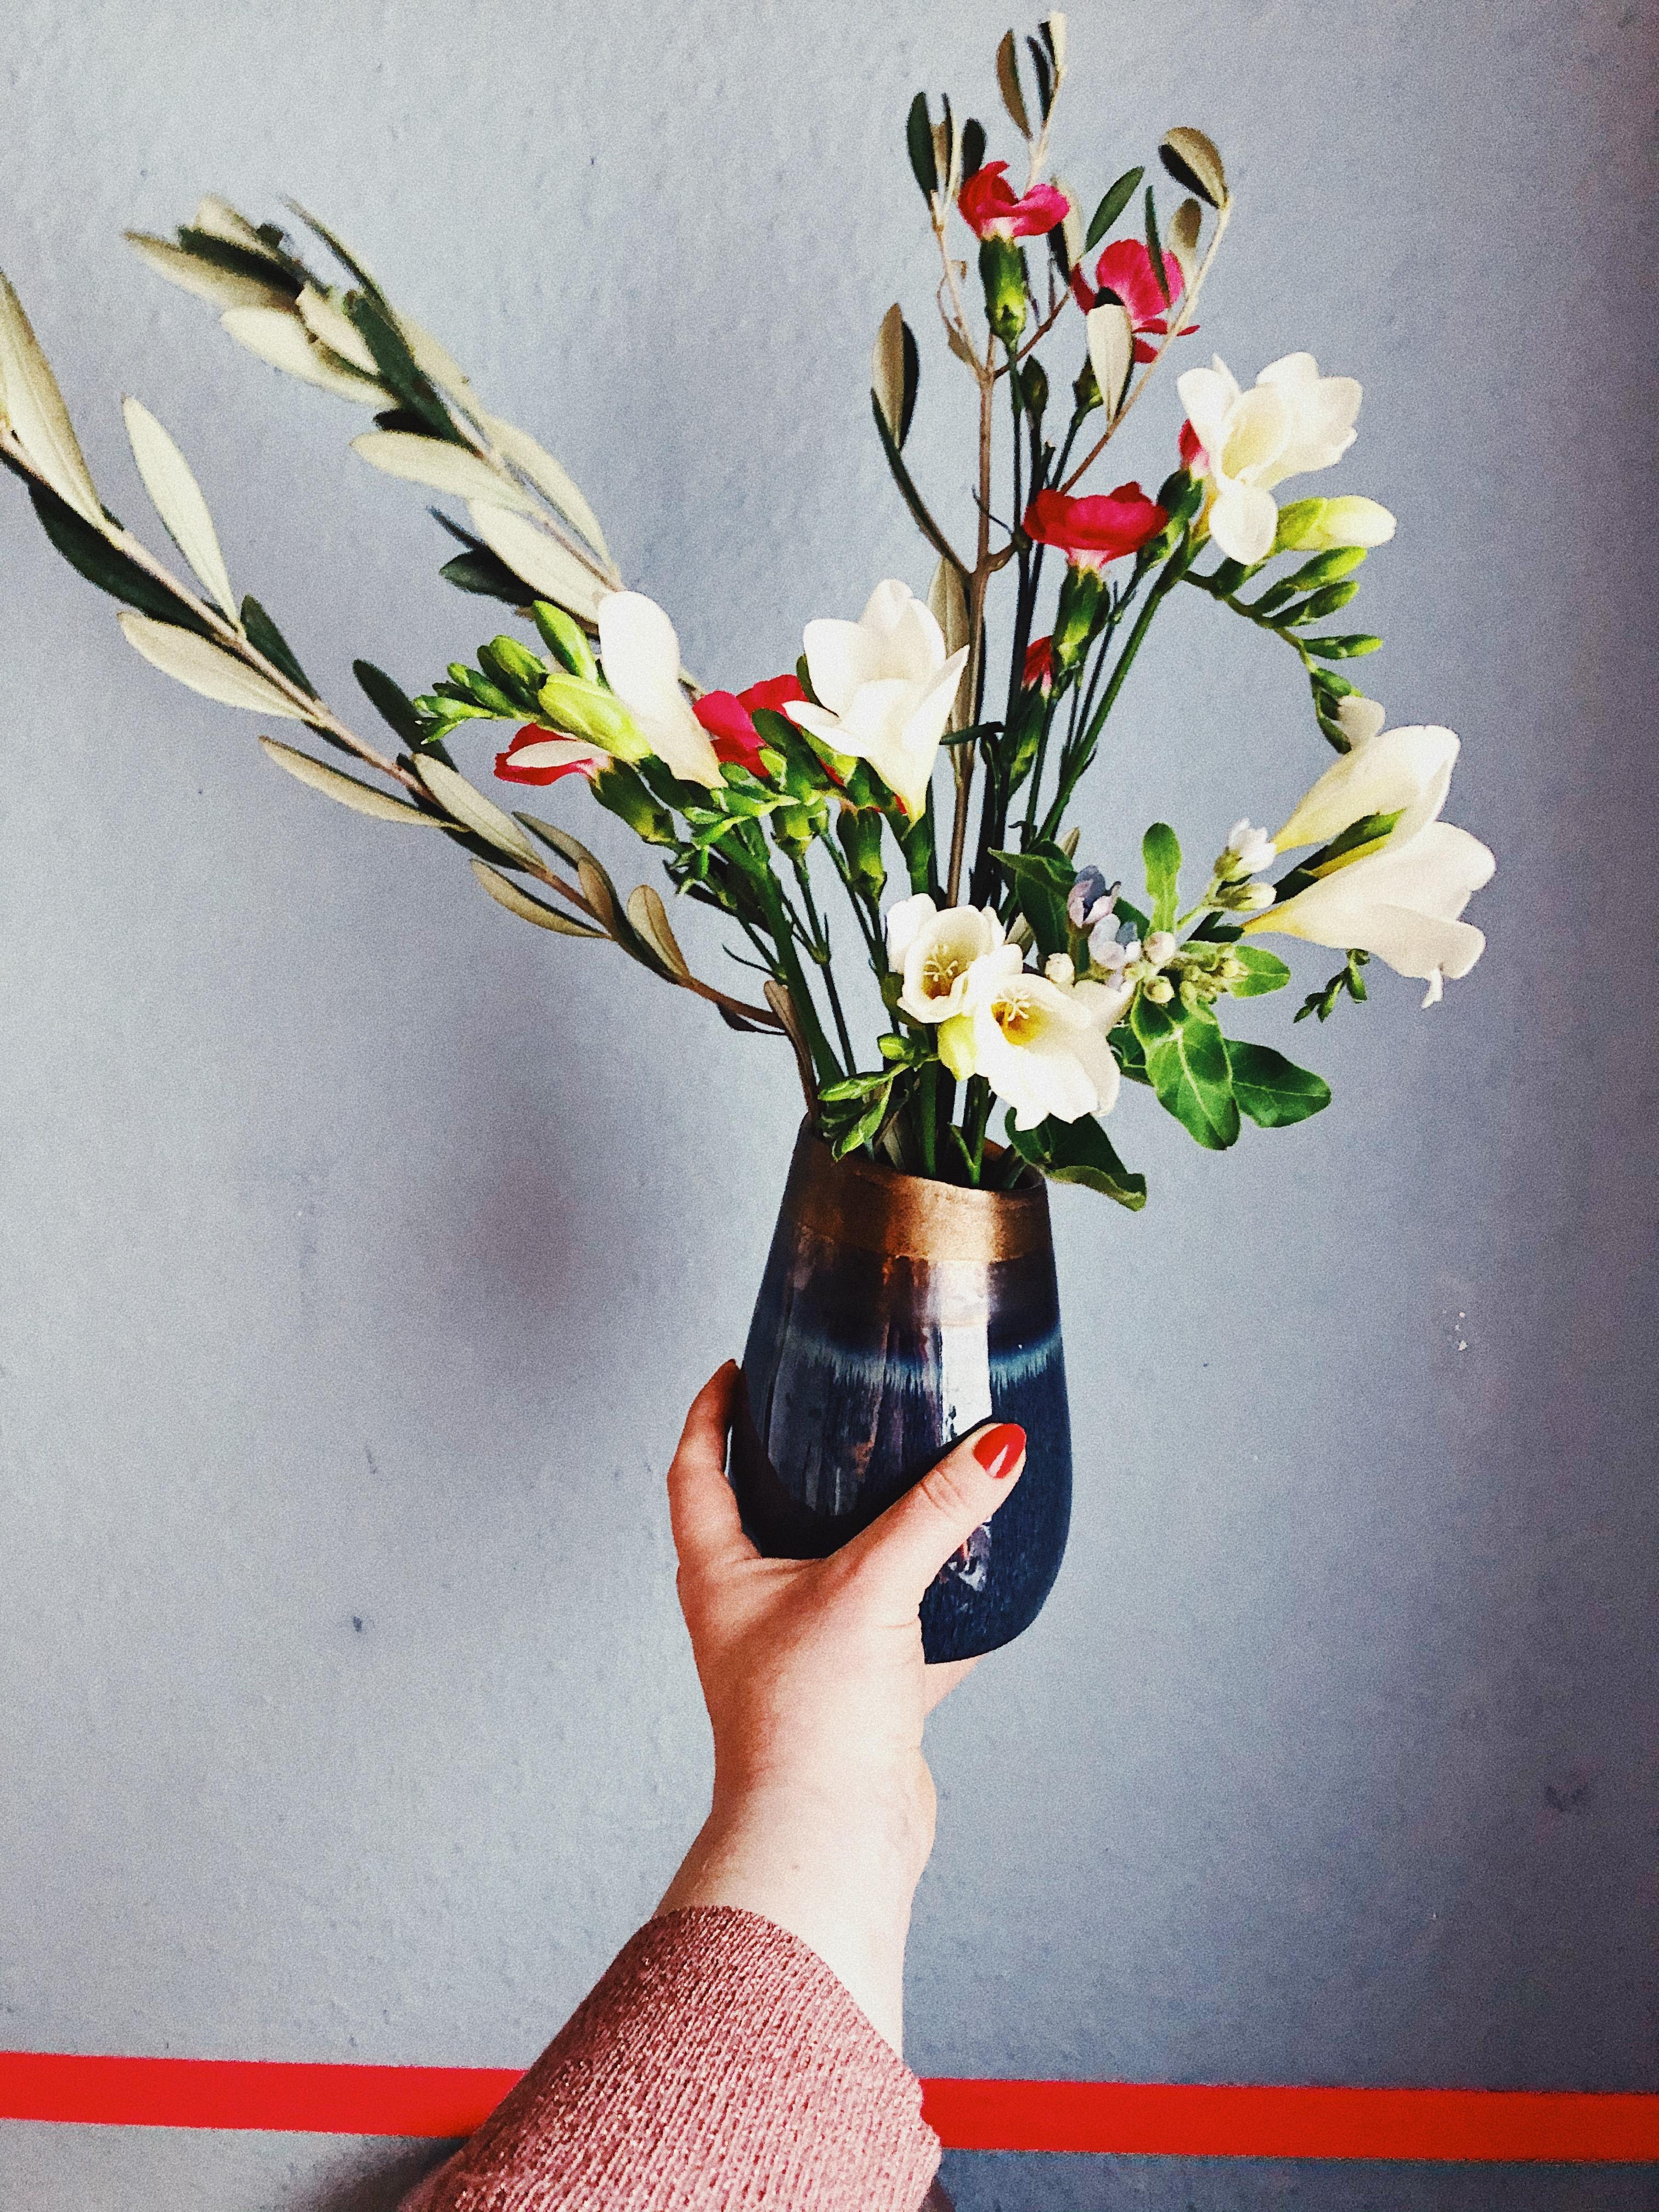 ESSENTIALS
#Blumen #Flowers #Vase #Ohneblumengehtsnicht
